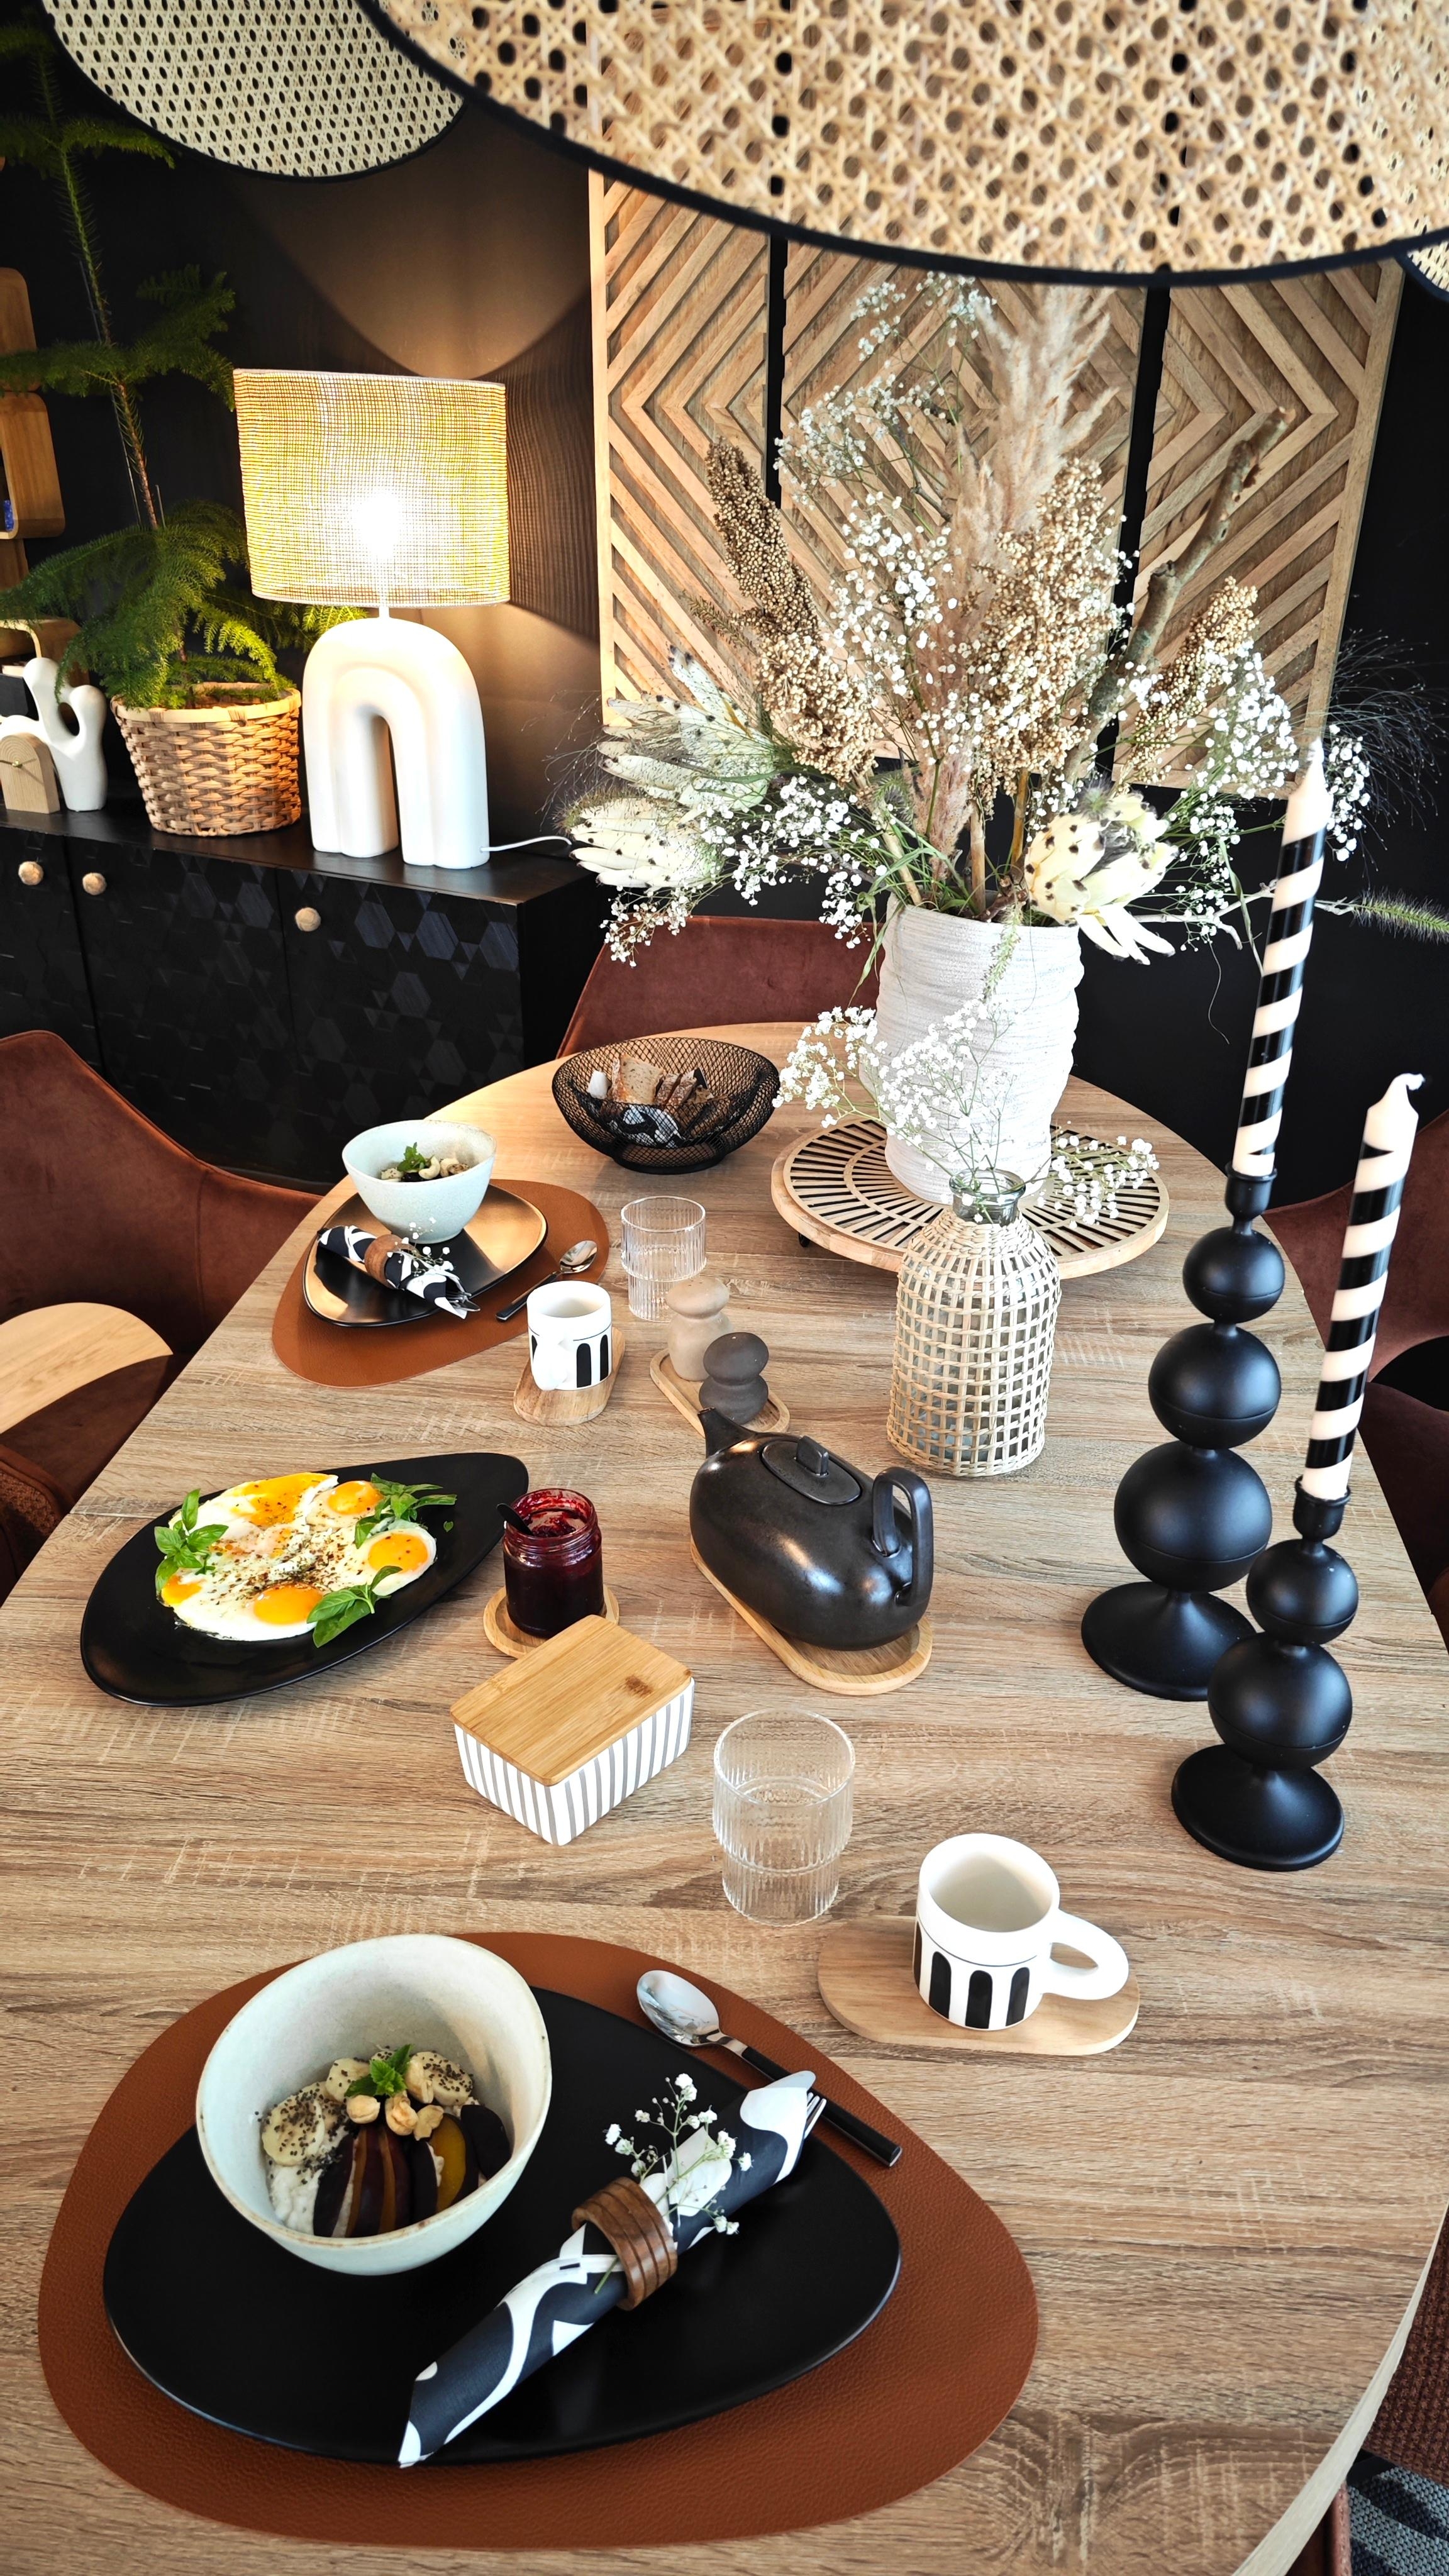 #breakfast #love #cozyhome #sundayvibes #dekor #dekoration #decoration #living #interior #design #hygge #couchliebt 